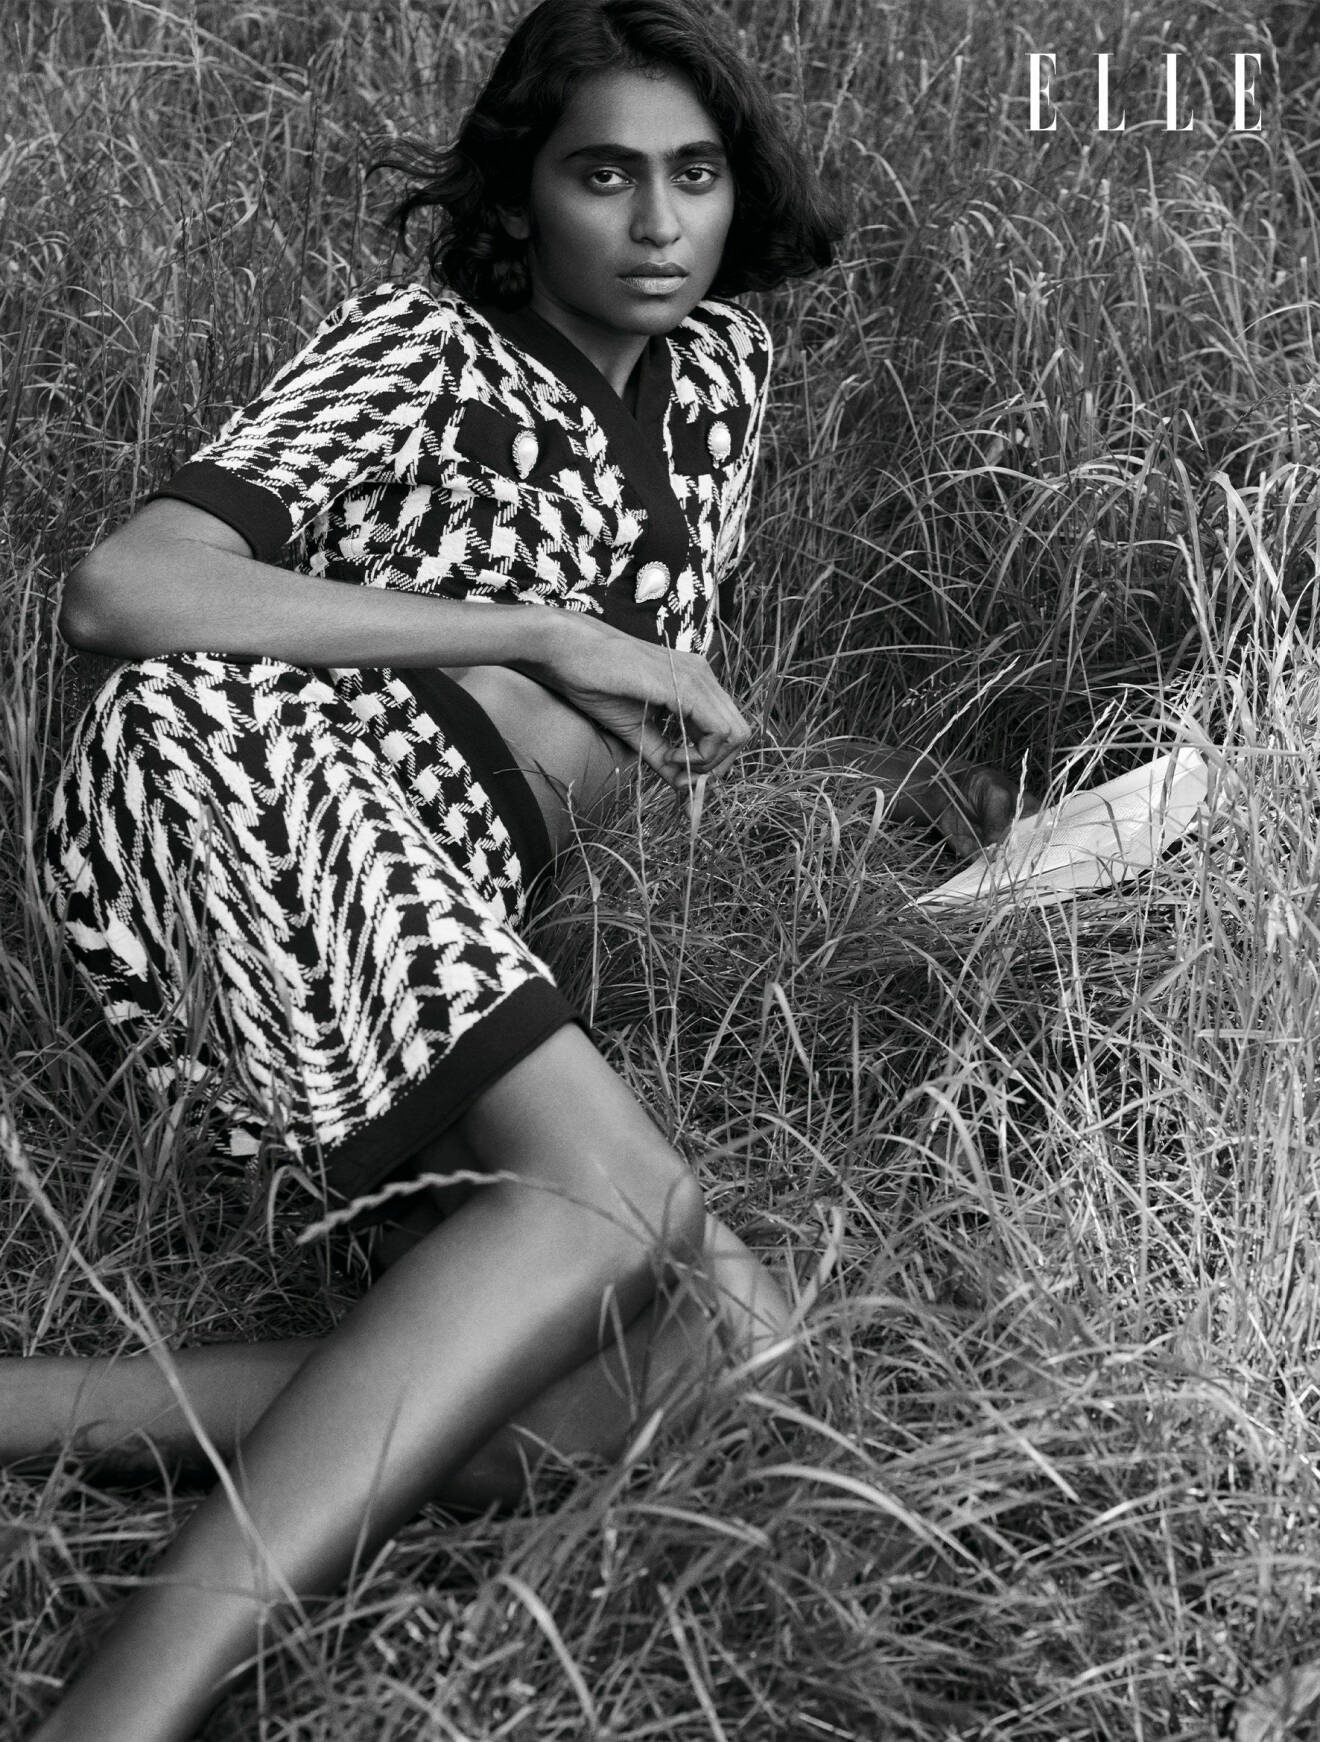 Modellen Barathy ligger i gräset, hon bär matchande topp och kjol i svartvitt mönster, från Moschino.